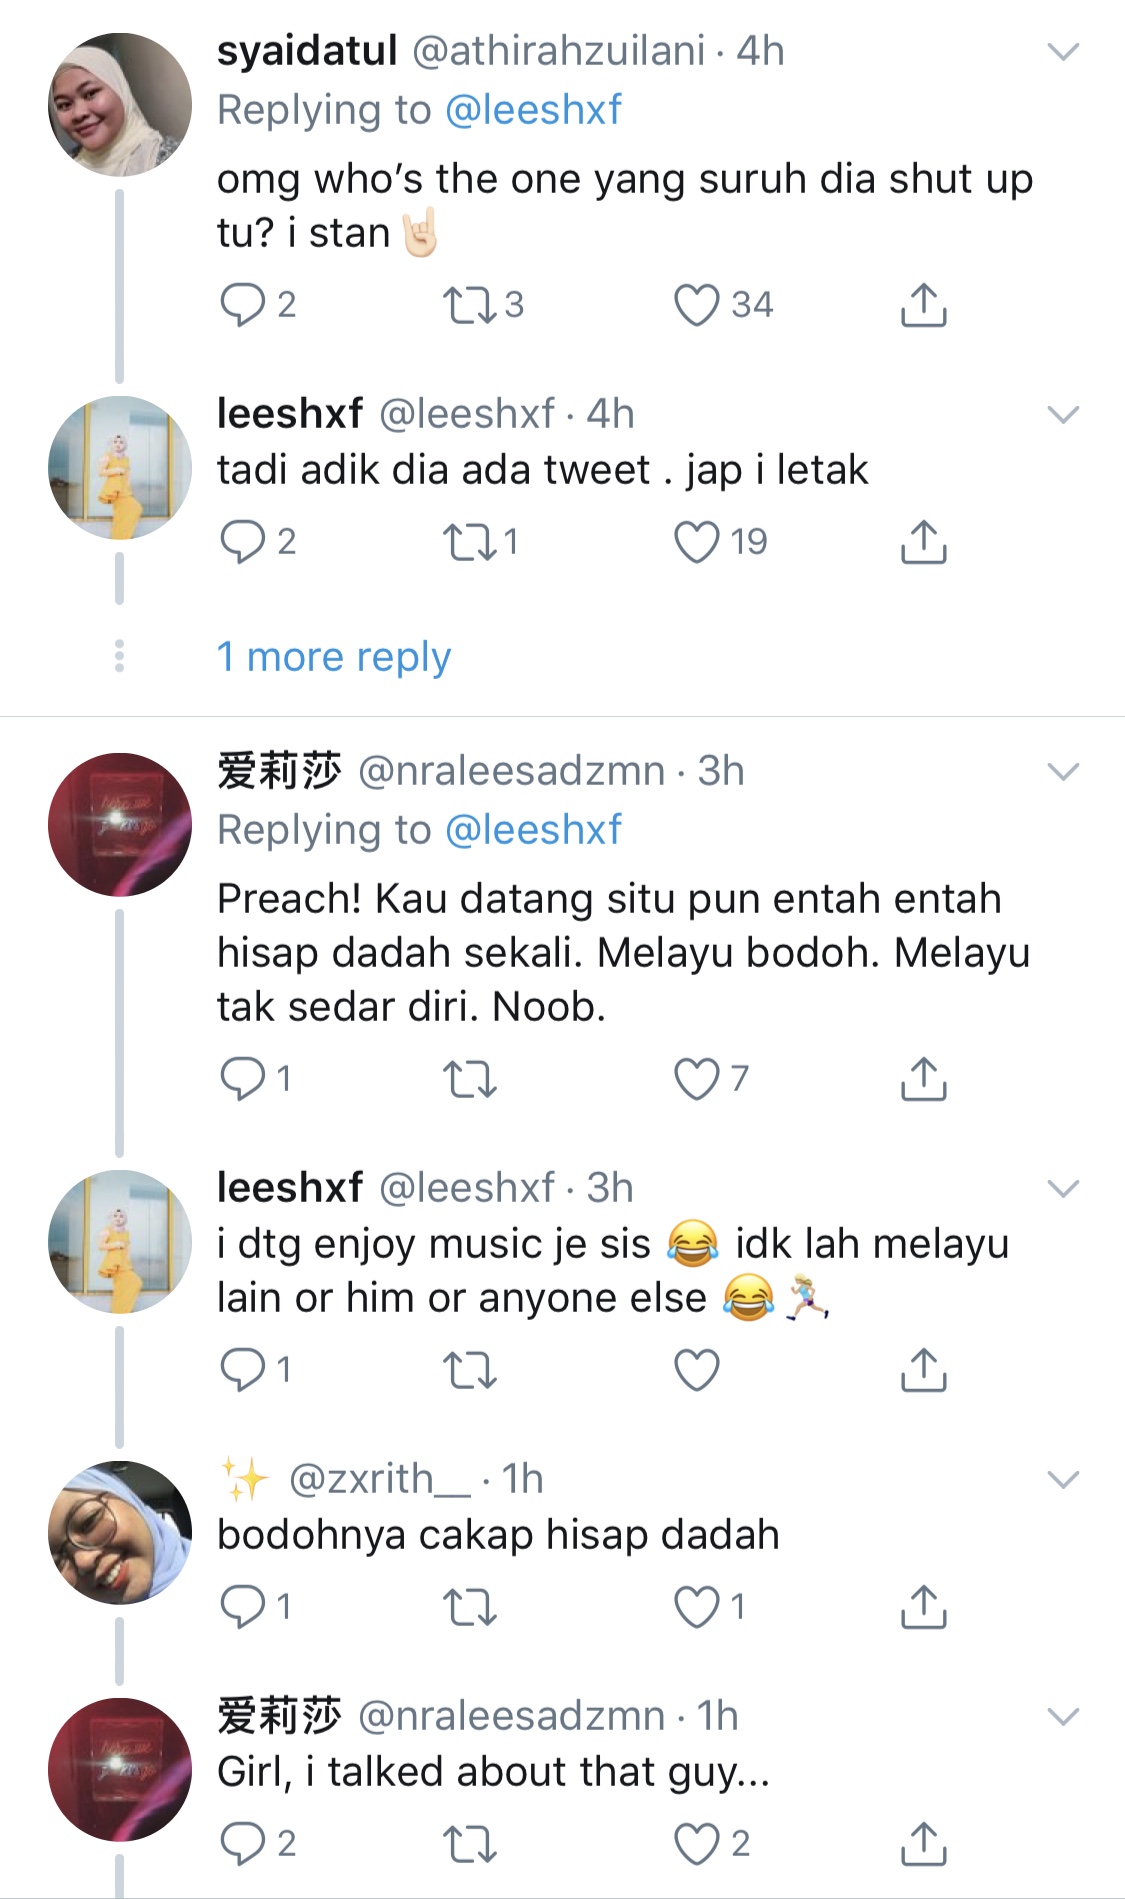 “Oh Melayu,”- Netizen Persoal Kredibiliti Dan Bakat Yuna Tular Di Laman Media Sosial